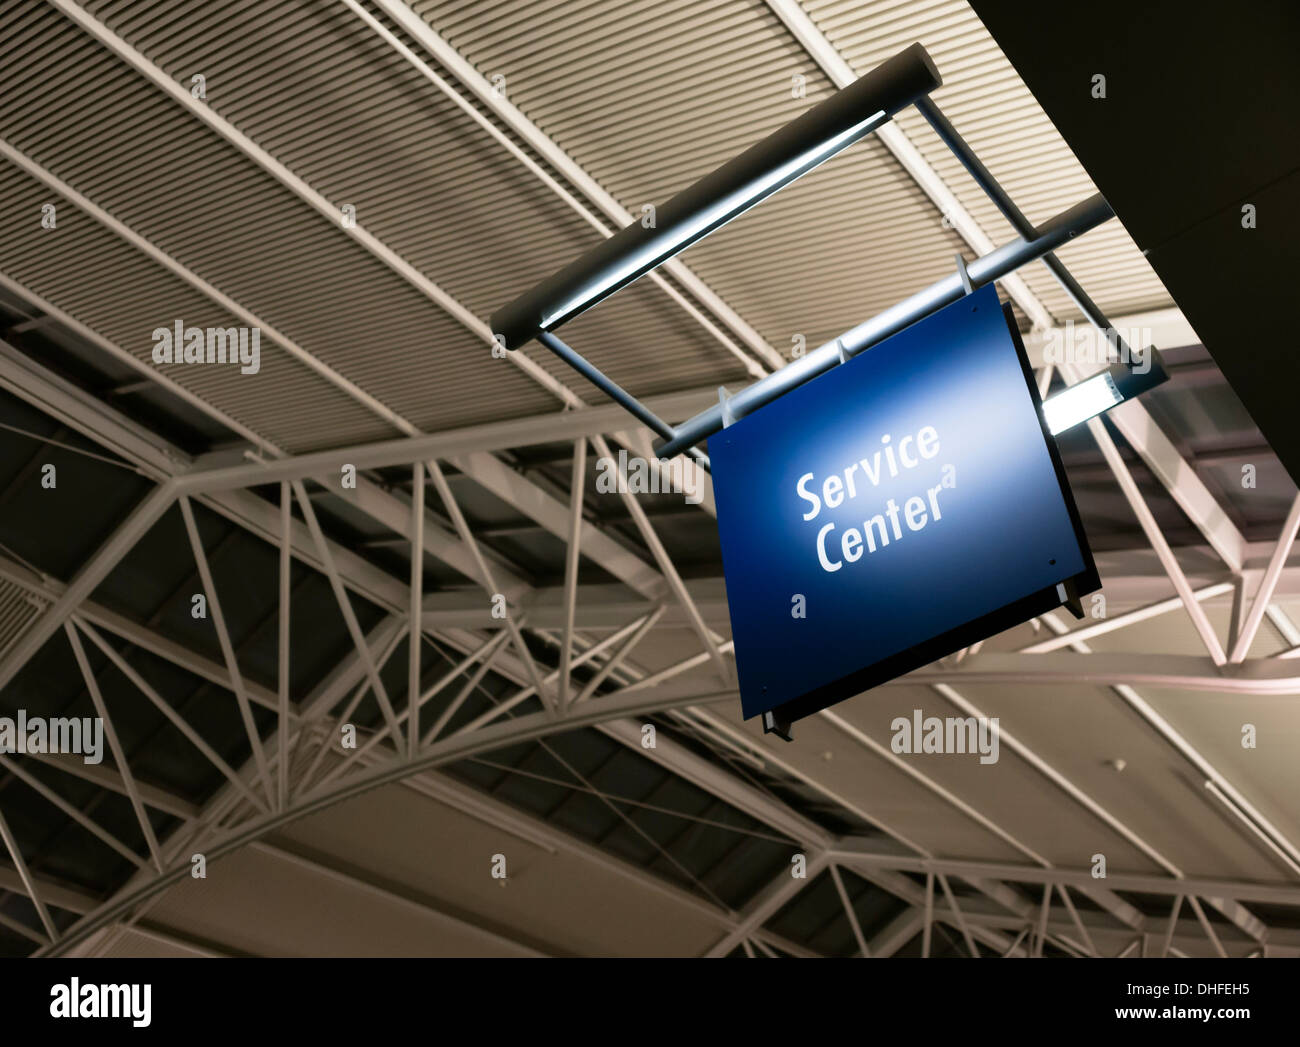 Blaue Beschilderung markiert das Customer Service Center in einem öffentlichen Gebäude Shoipping Struktur Stockfoto